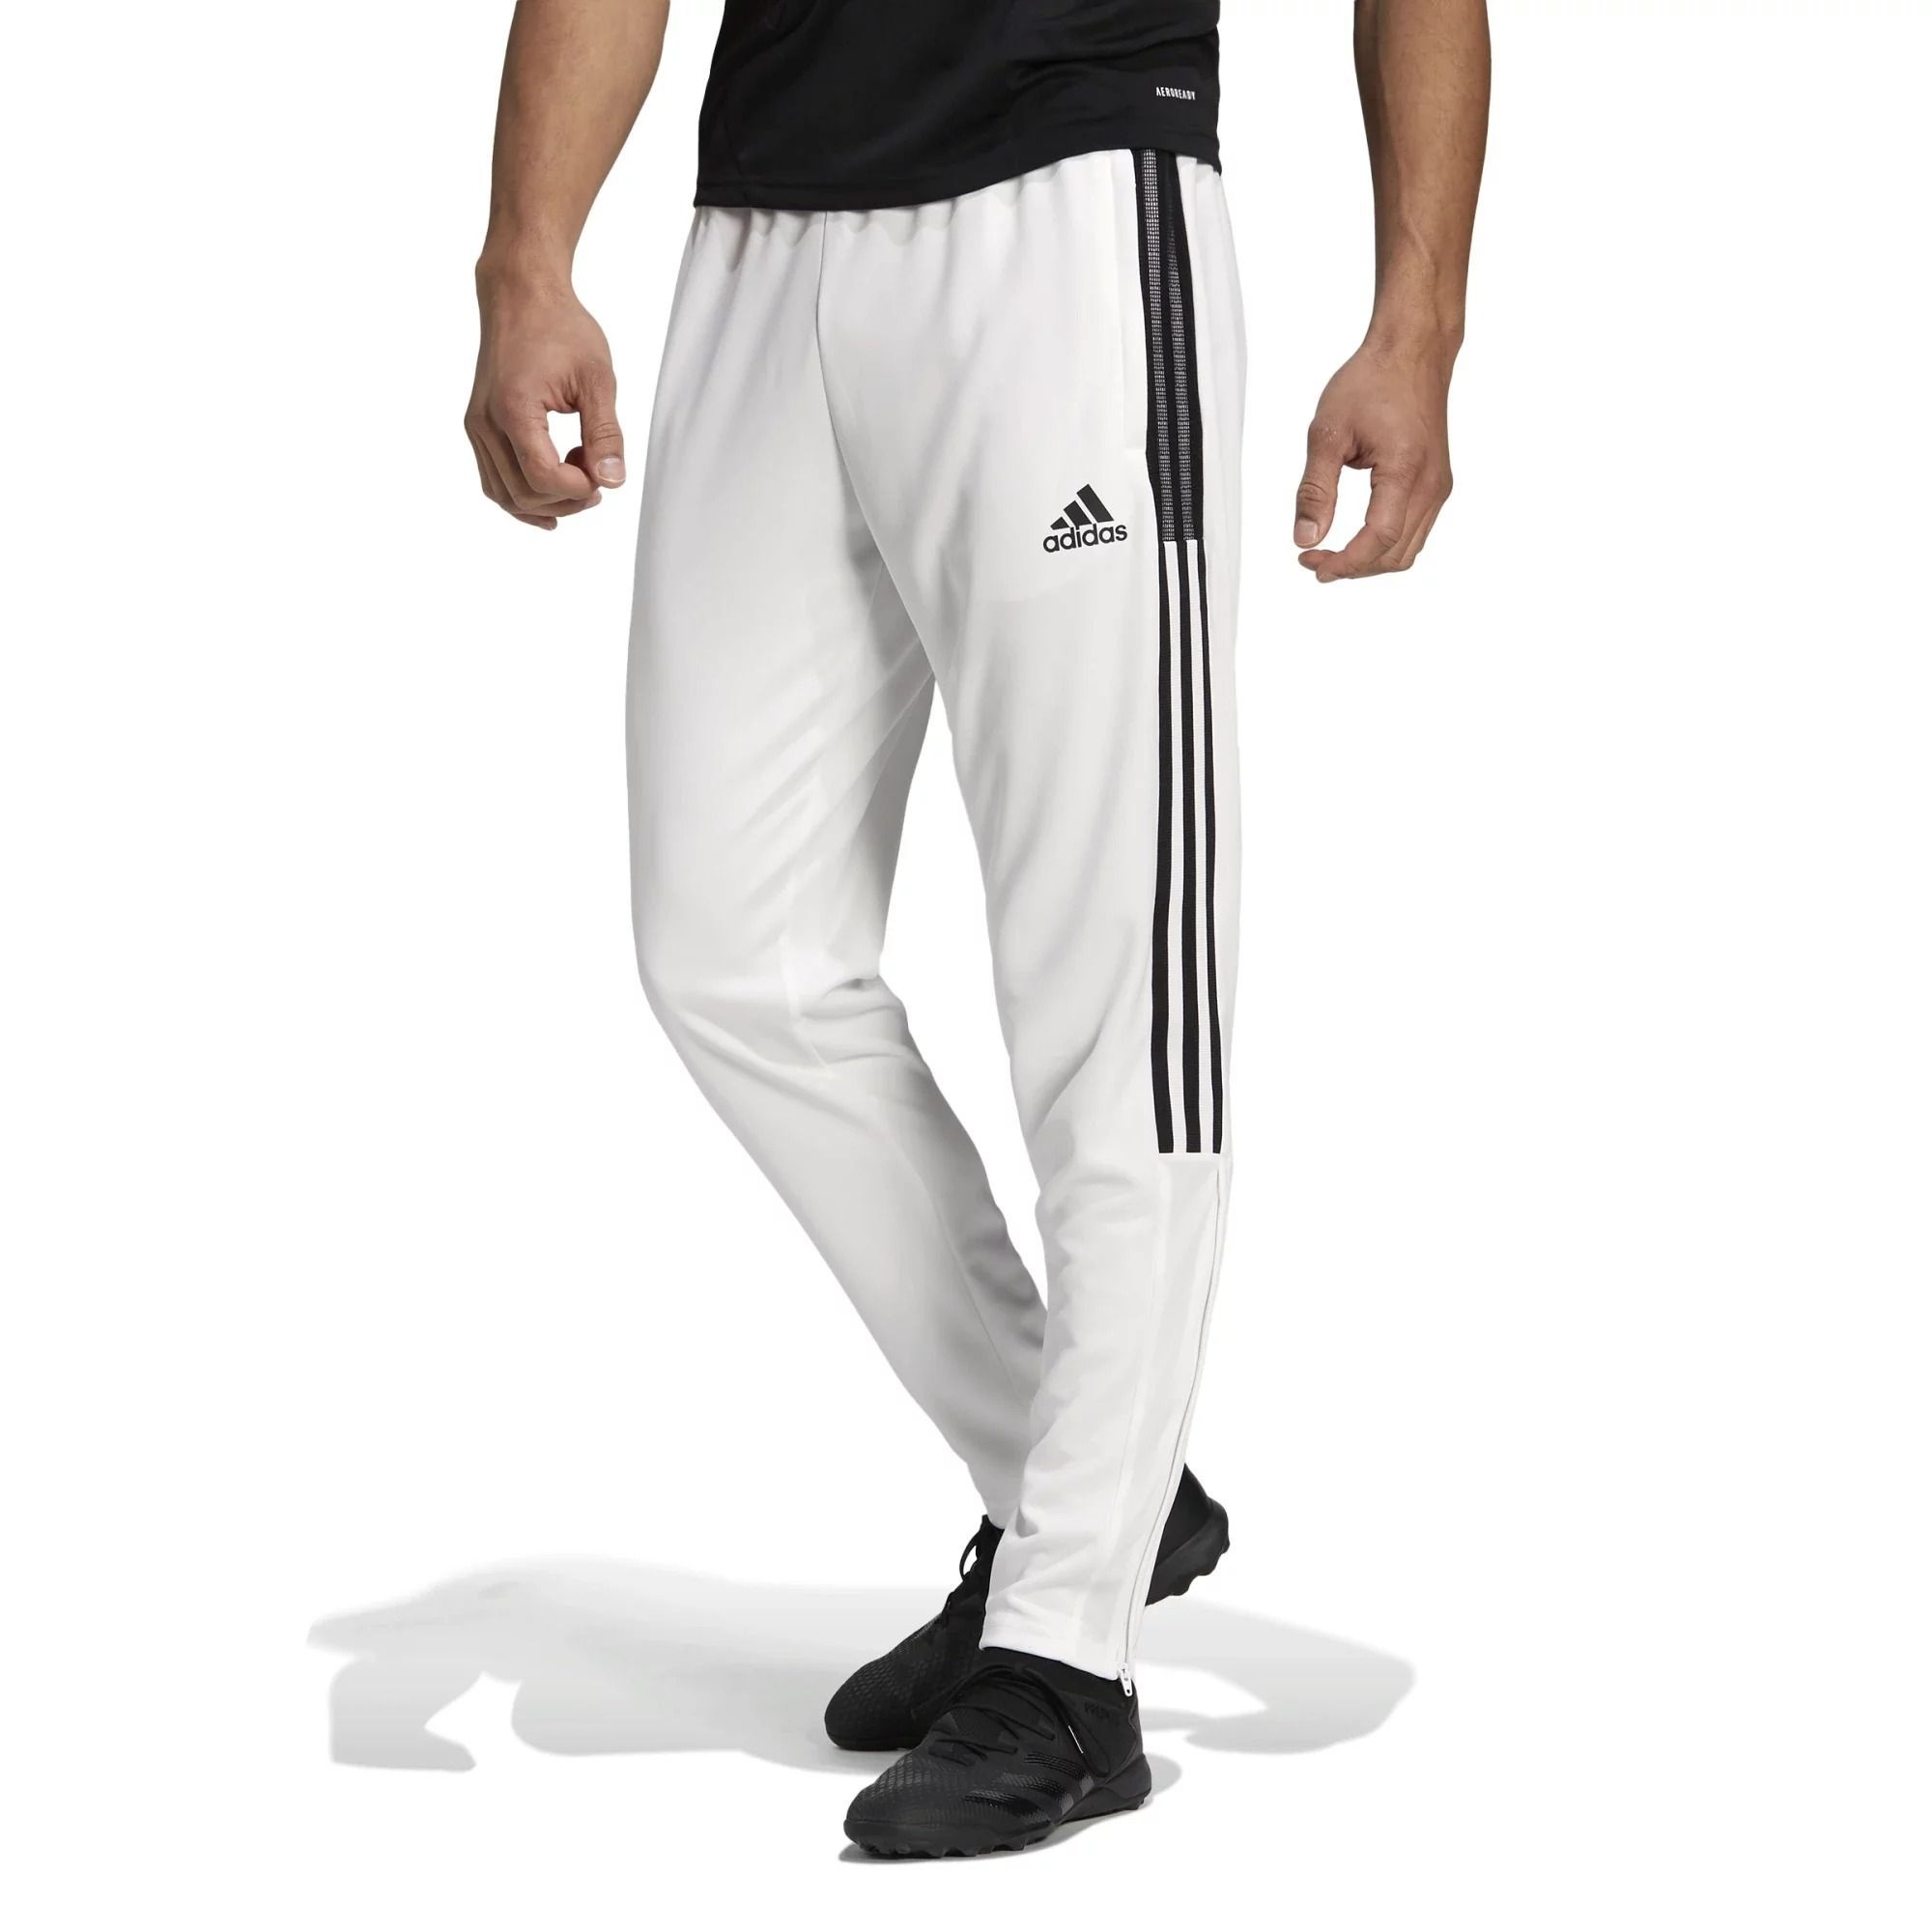 Adidas Juventus Zipper Sweatshirt KitTopPants 202122